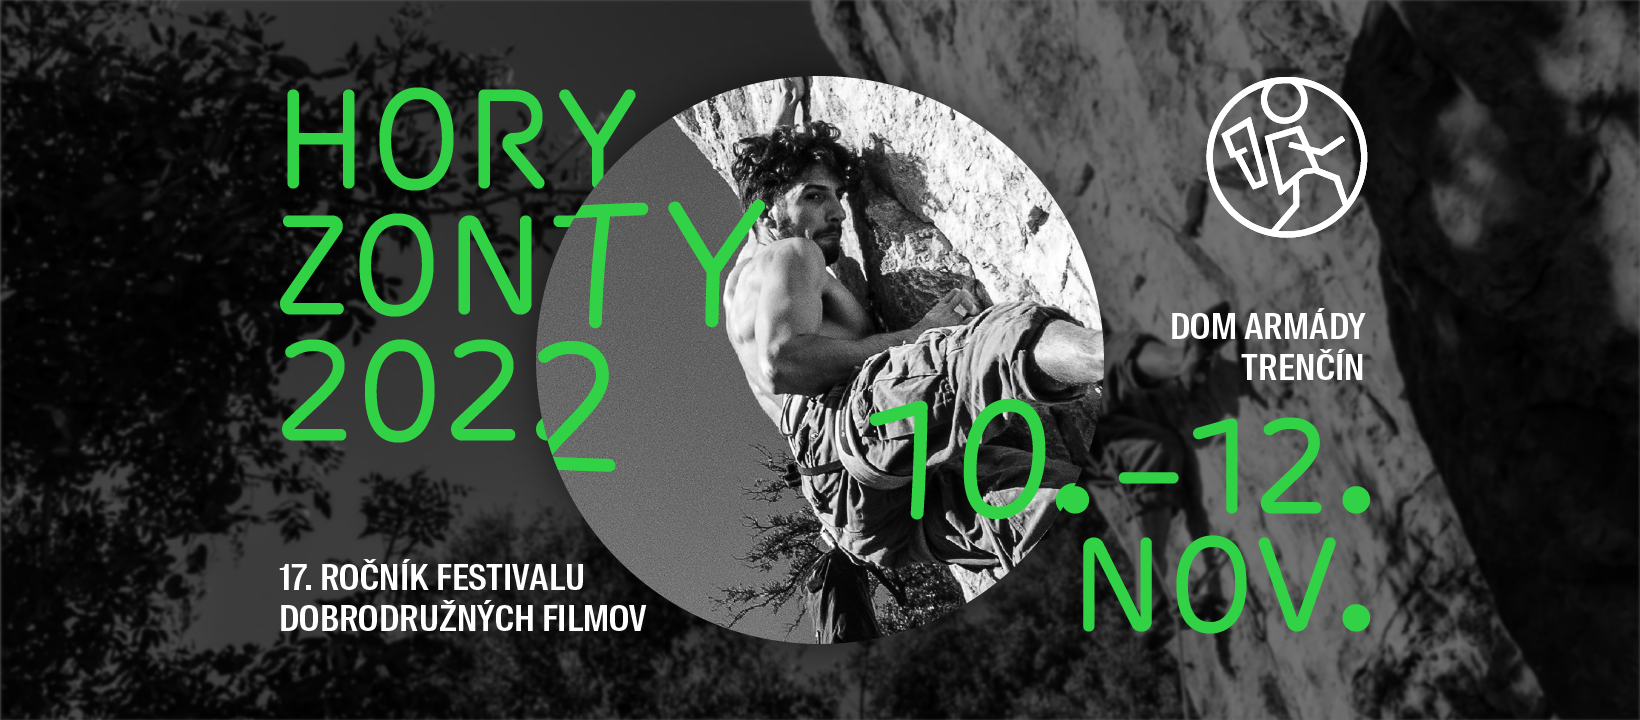 Festival HoryZonty prichádza po prvý krát s medzinárodnou filmovou súťažou